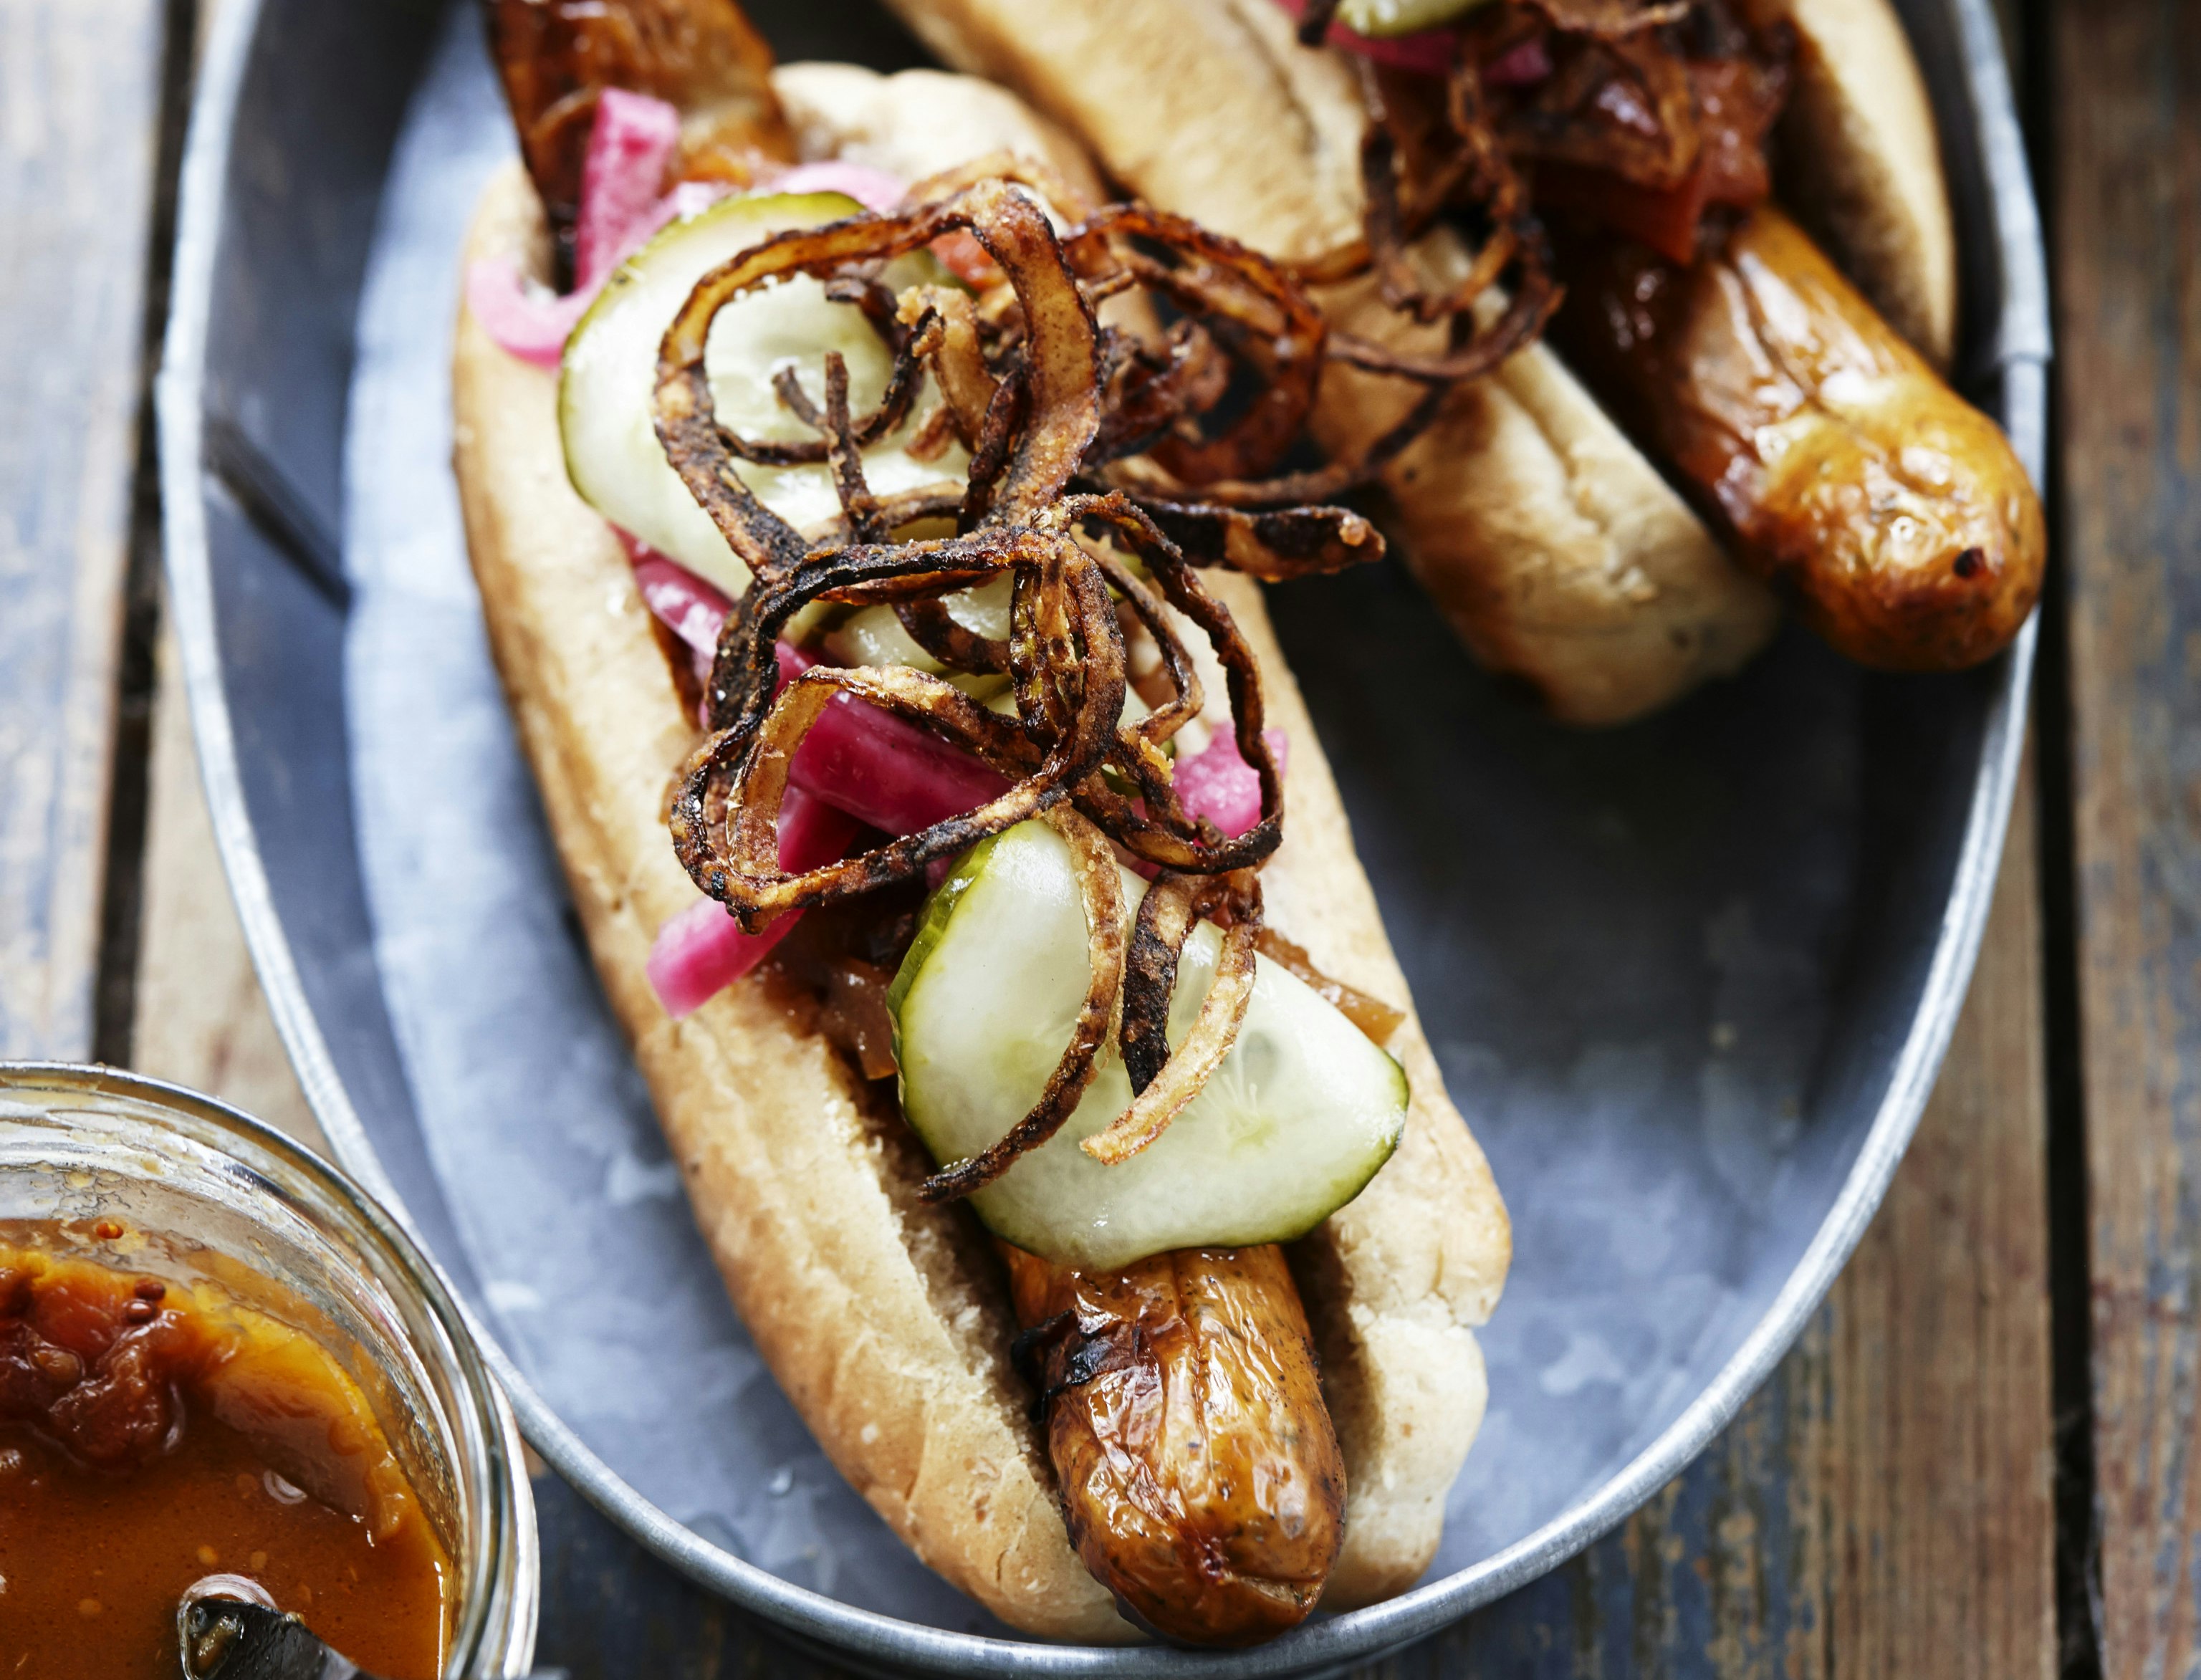 Gourmet-hotdogs med hjemmelavet tilbehør